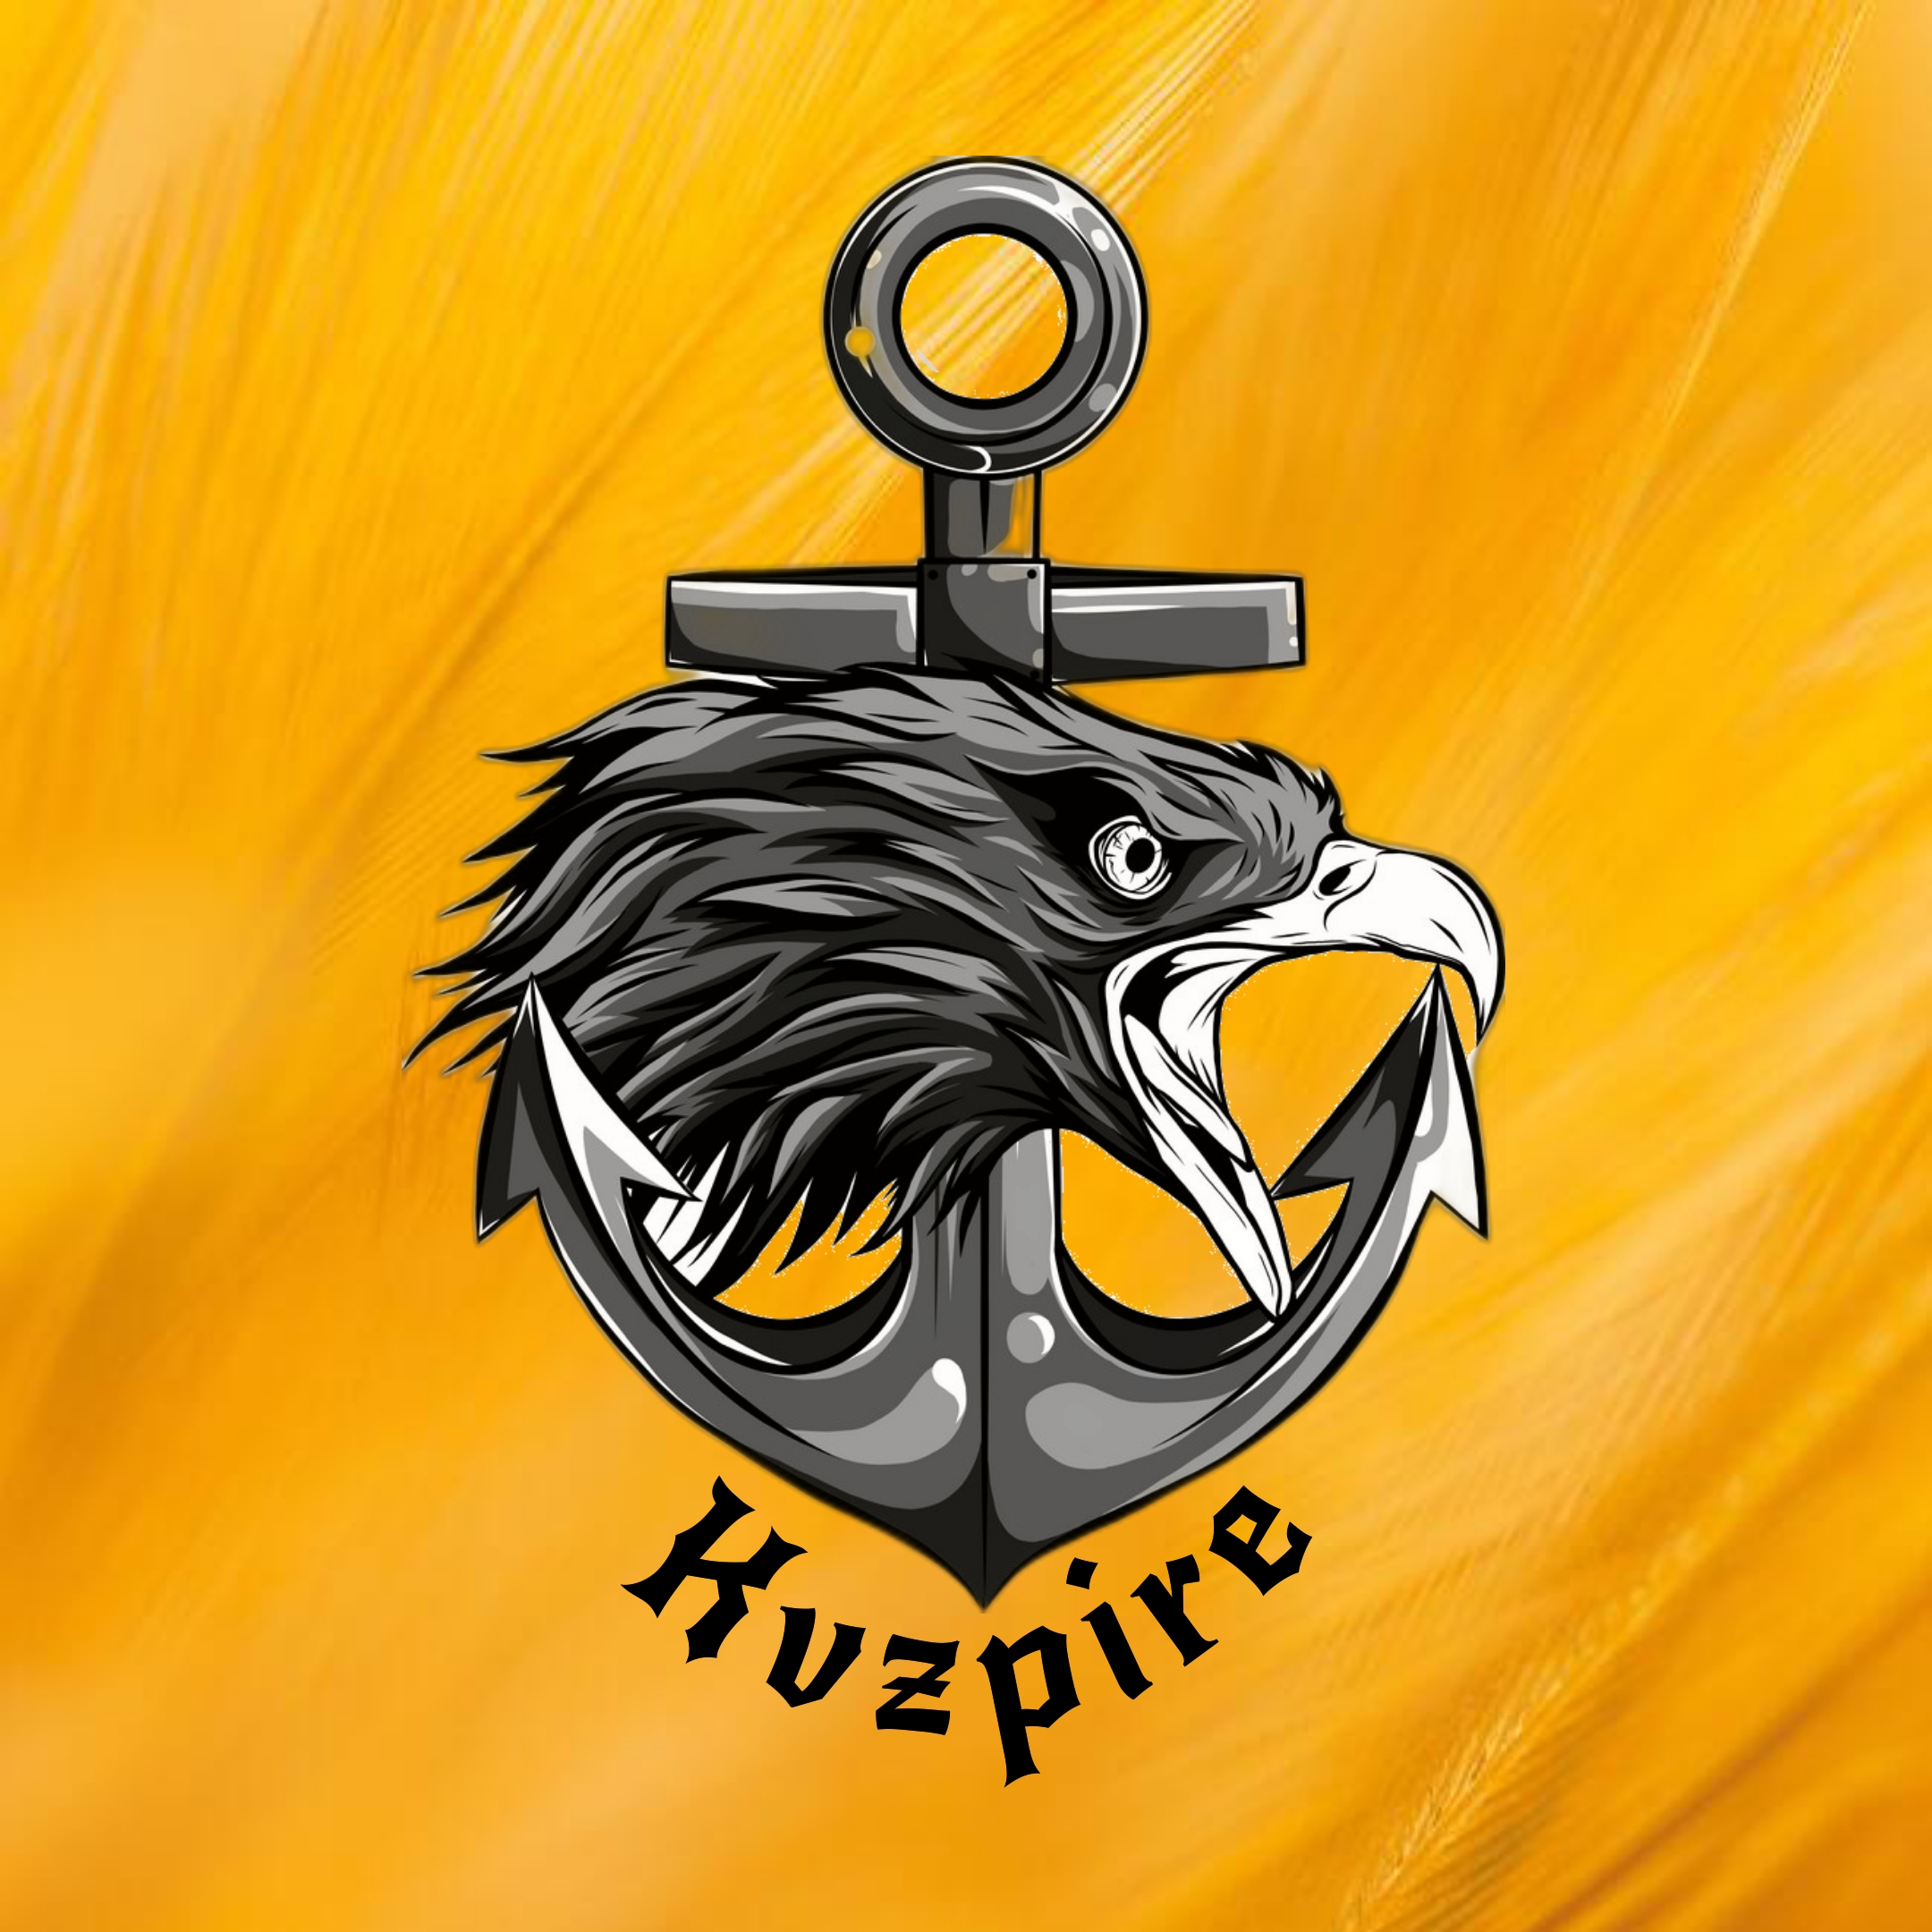 Kvzpire logo